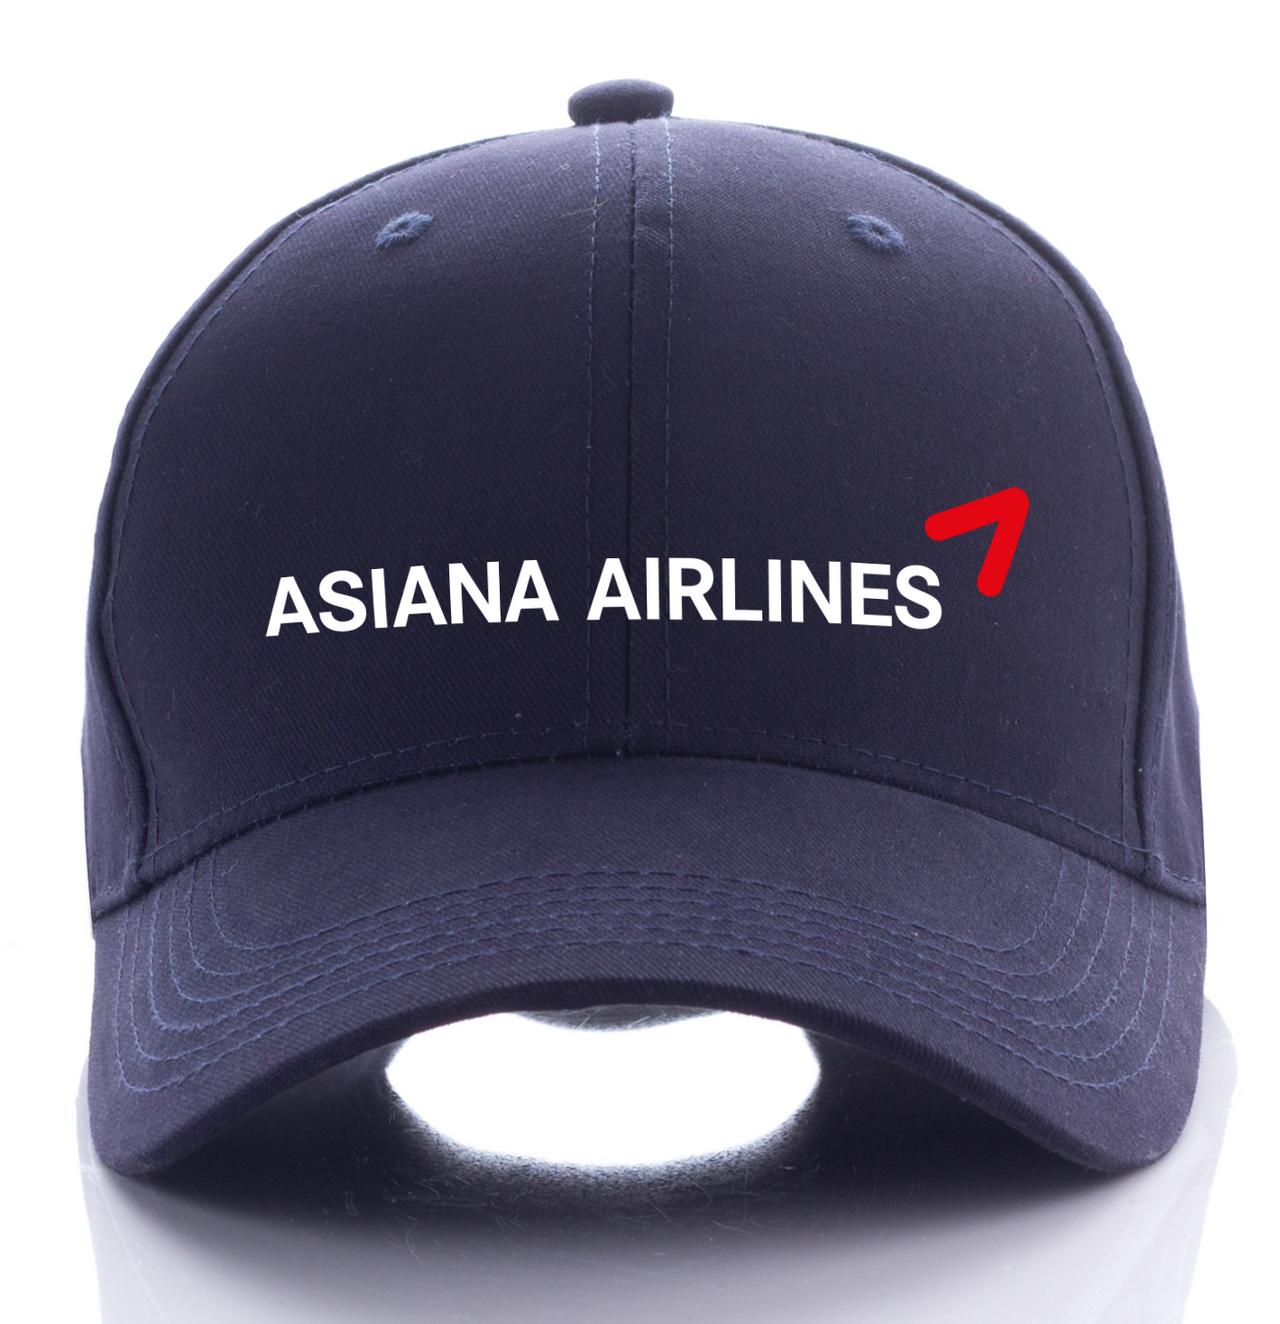 ASIAN AIRLINE DESIGNED CAP